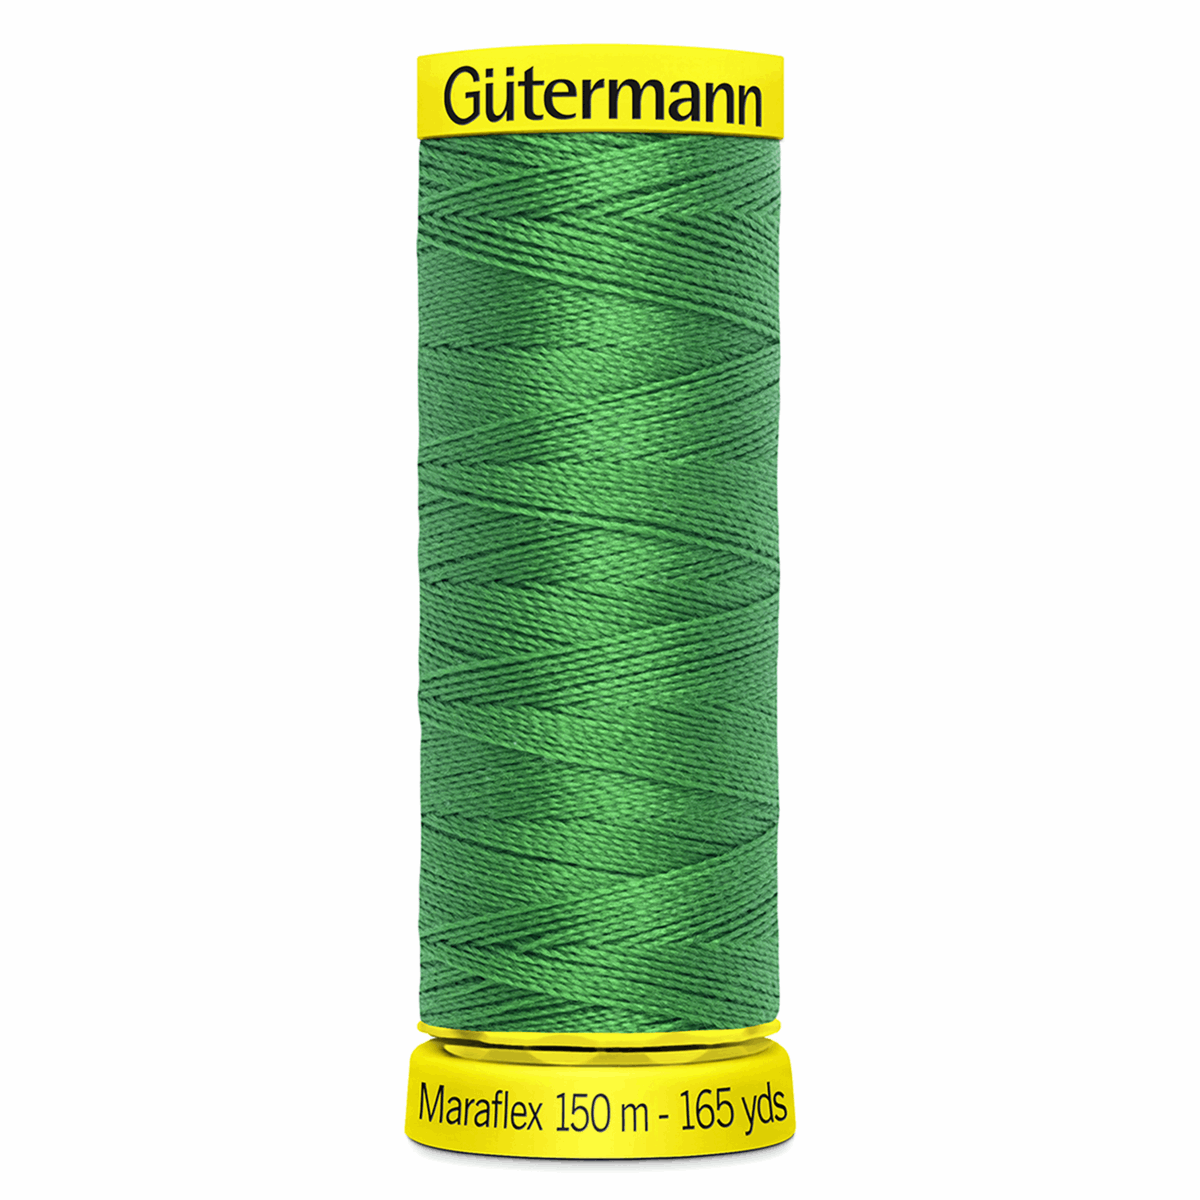 Gutermann Maraflex Elastic Sewing Thread 150m Emerald Green 396